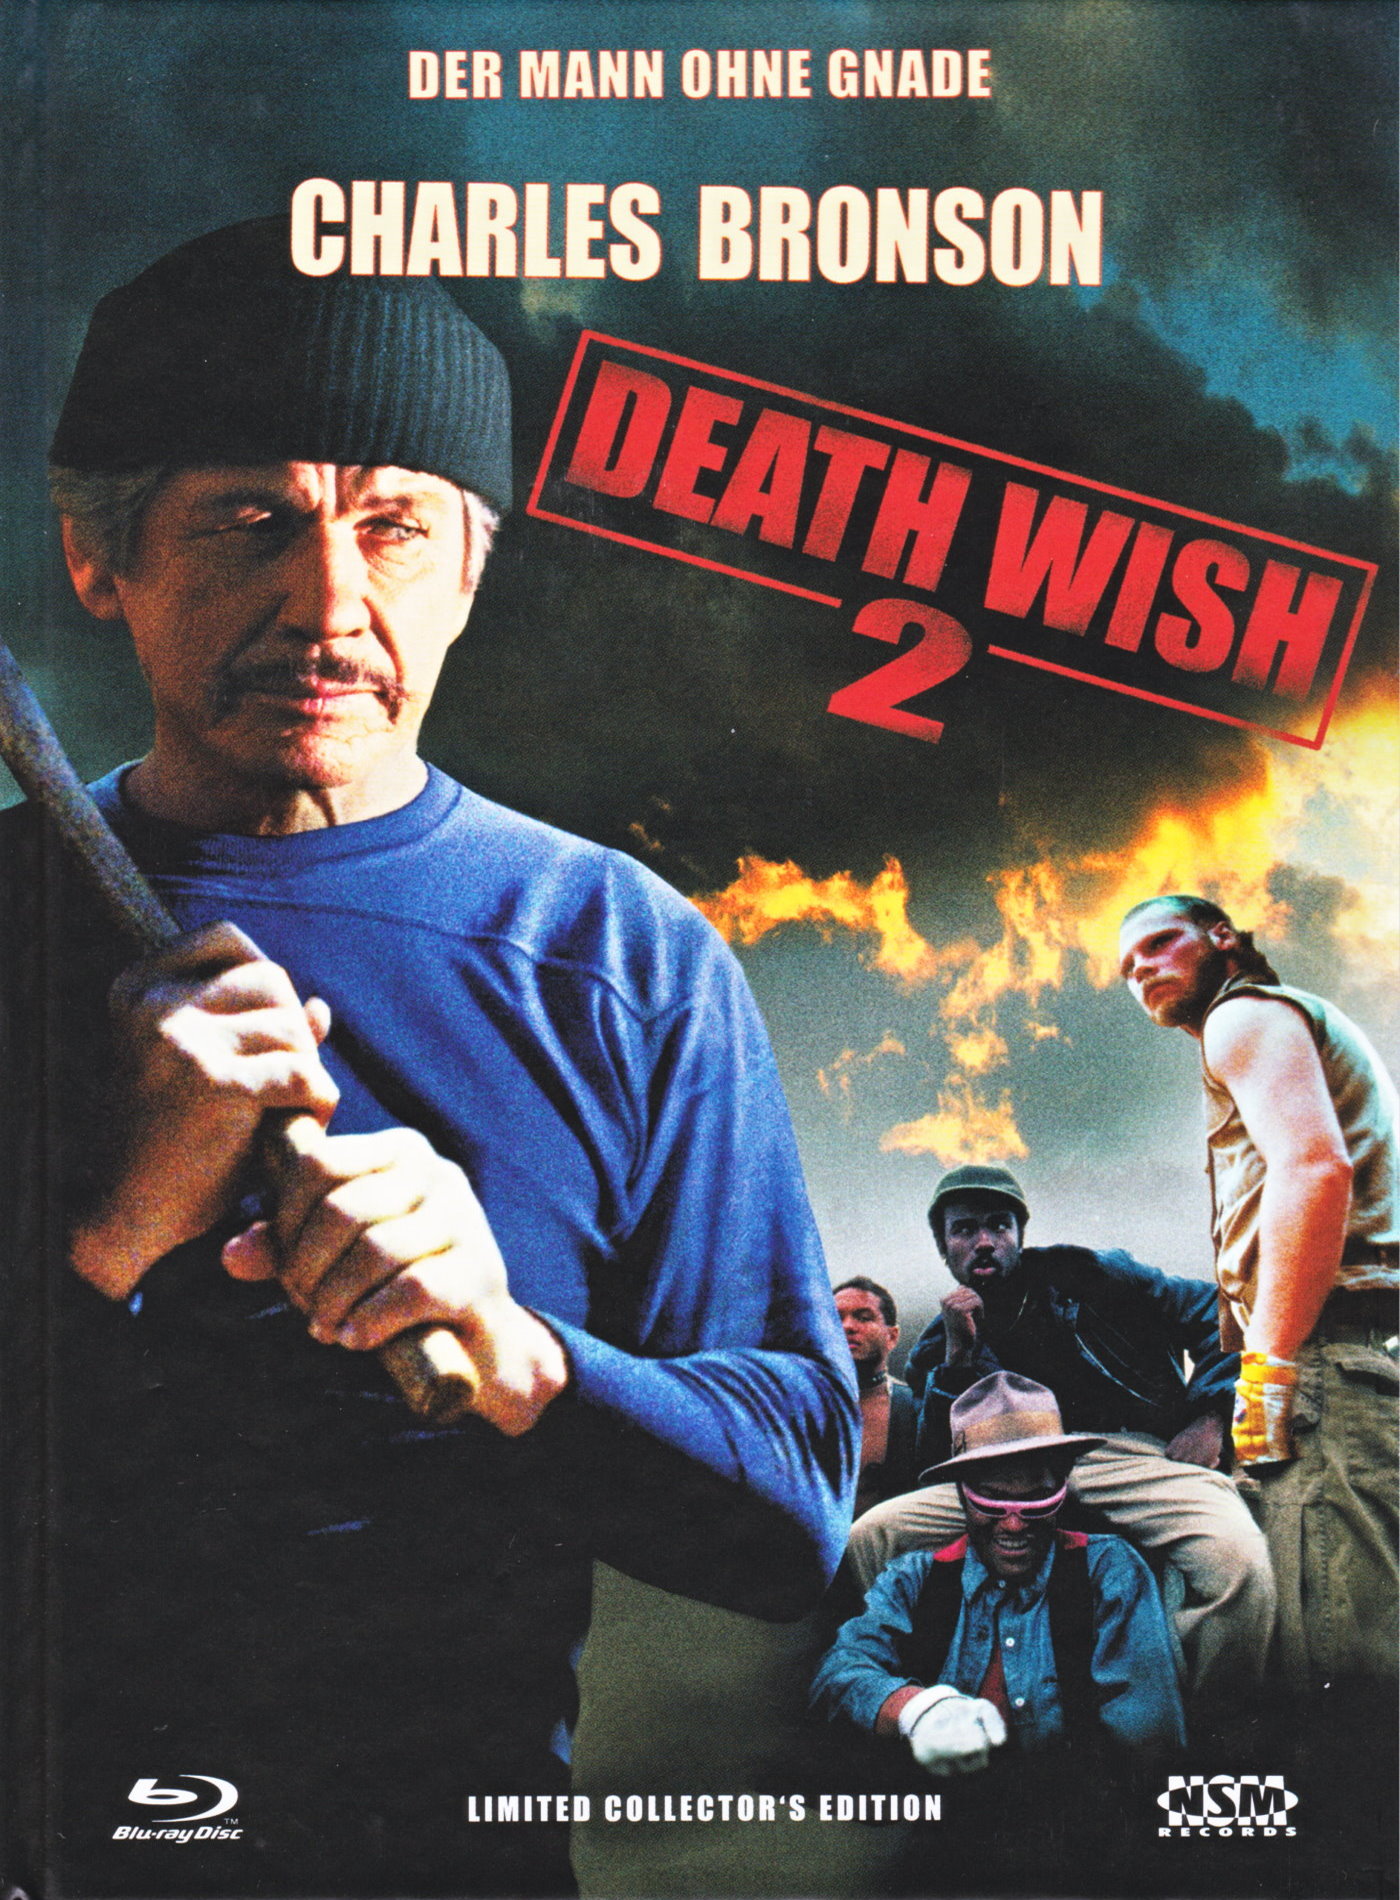 Cover - Death Wish 2 - Der Mann ohne Gnade.jpg